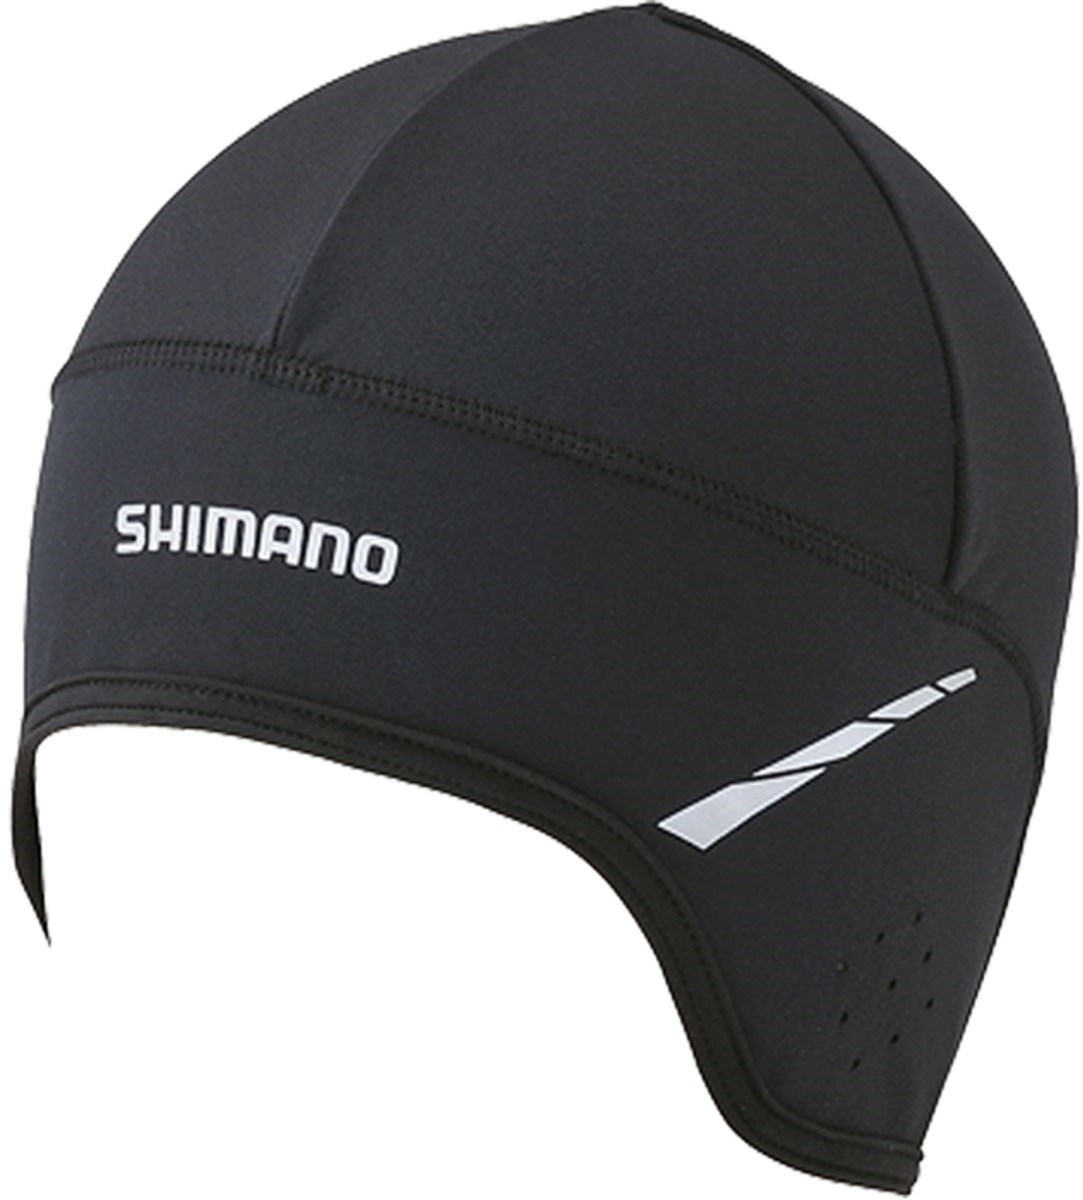 Shimano Under Helmet Cap product image